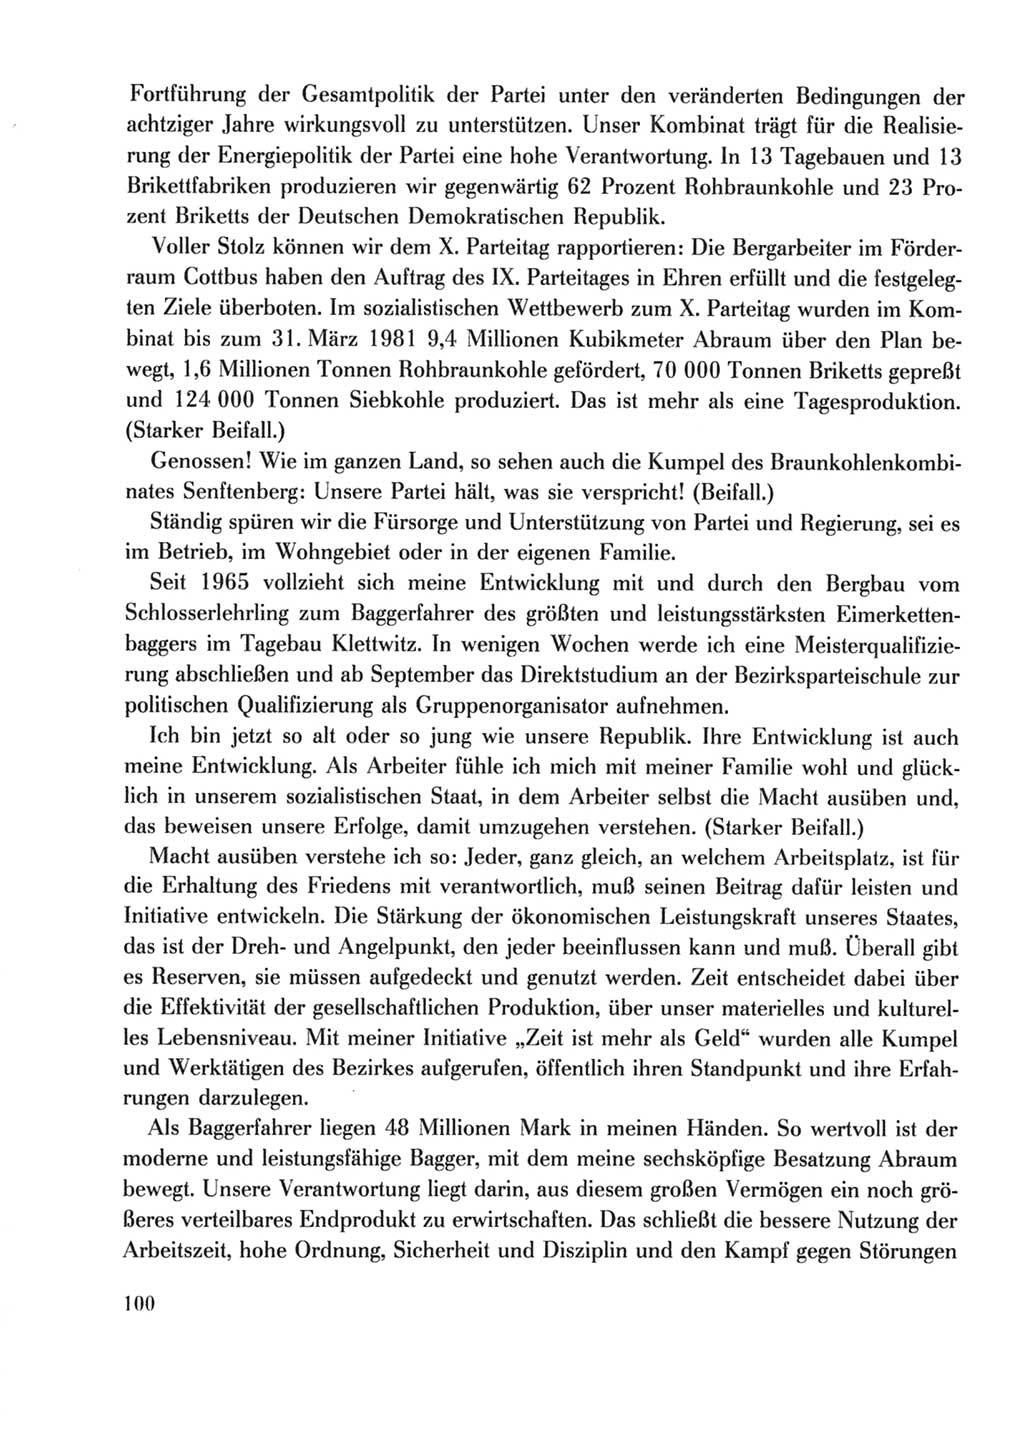 Protokoll der Verhandlungen des Ⅹ. Parteitages der Sozialistischen Einheitspartei Deutschlands (SED) [Deutsche Demokratische Republik (DDR)] 1981, Band 2, Seite 100 (Prot. Verh. Ⅹ. PT SED DDR 1981, Bd. 2, S. 100)